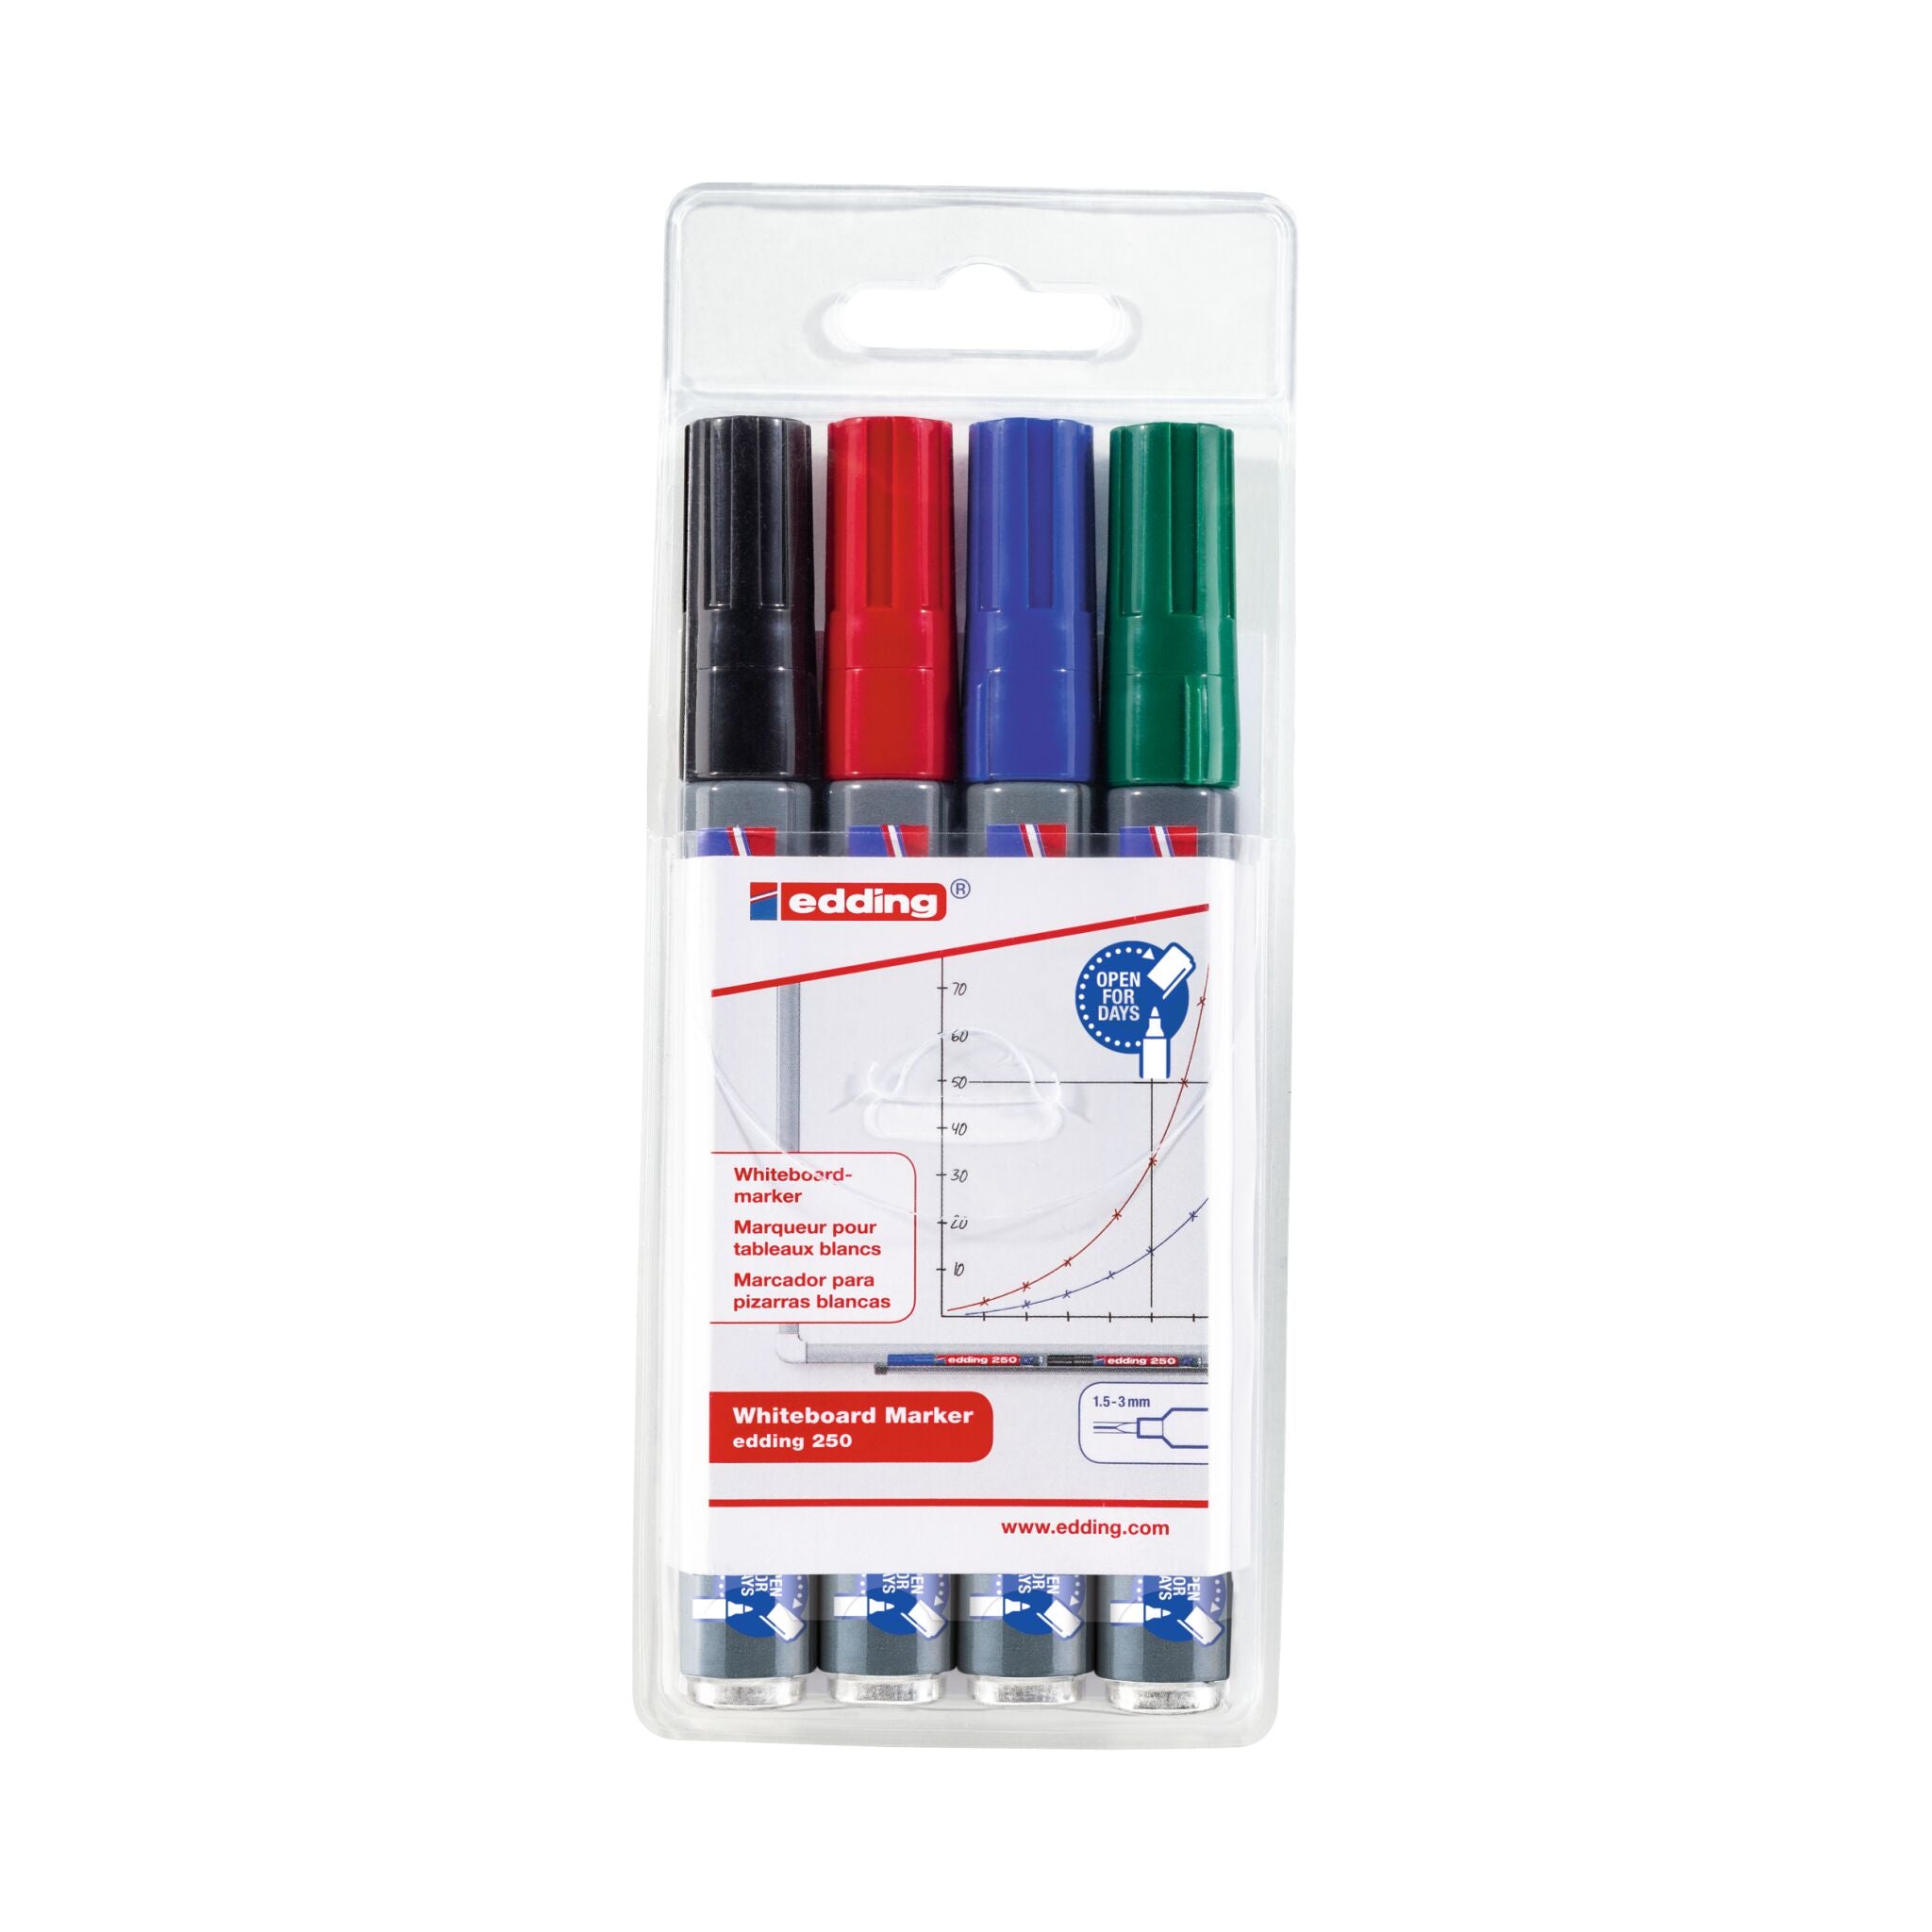 Vierer-Set edding 250 Whiteboardmarker 4er-Set in einer trocken abwischbaren Kunststoffverpackung, inklusive den Farben Schwarz, Rot, Blau und Grün.